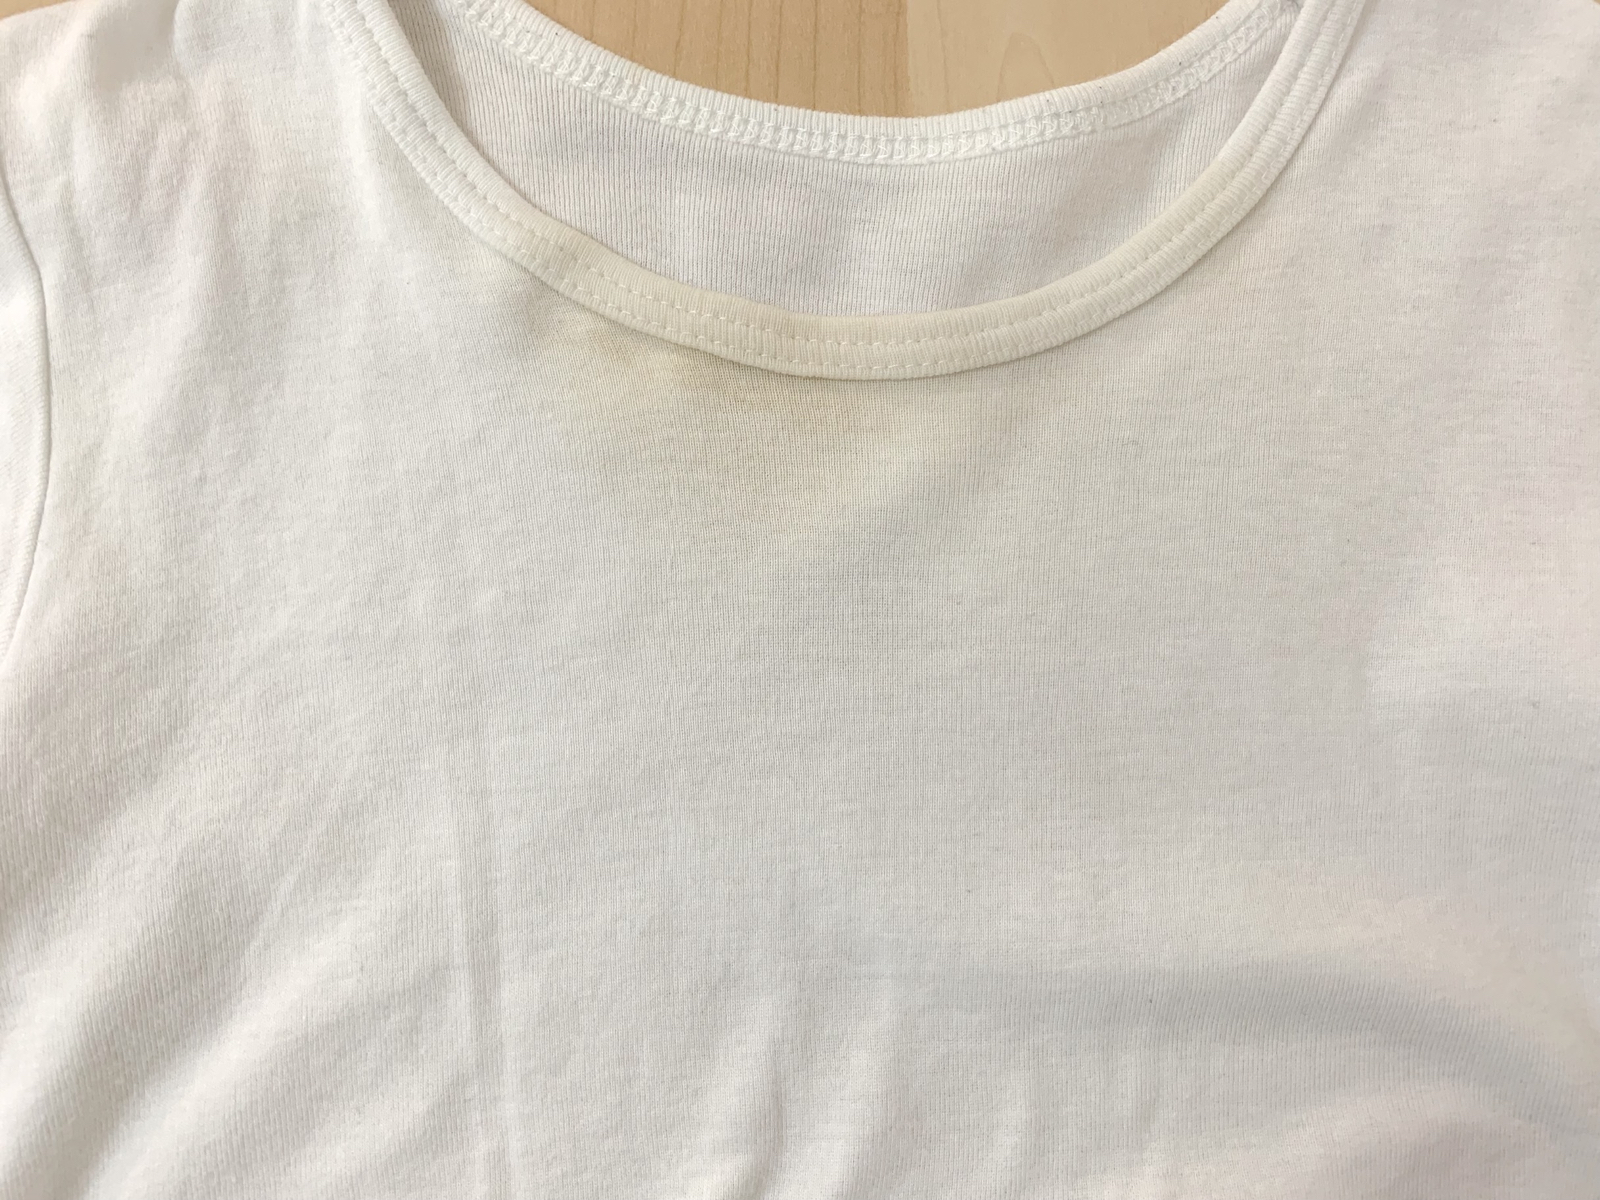 オキシクリーンで黄ばみが気になる白tシャツを洗濯してみた つけ置き洗いするだけで 驚くほど真っ白に